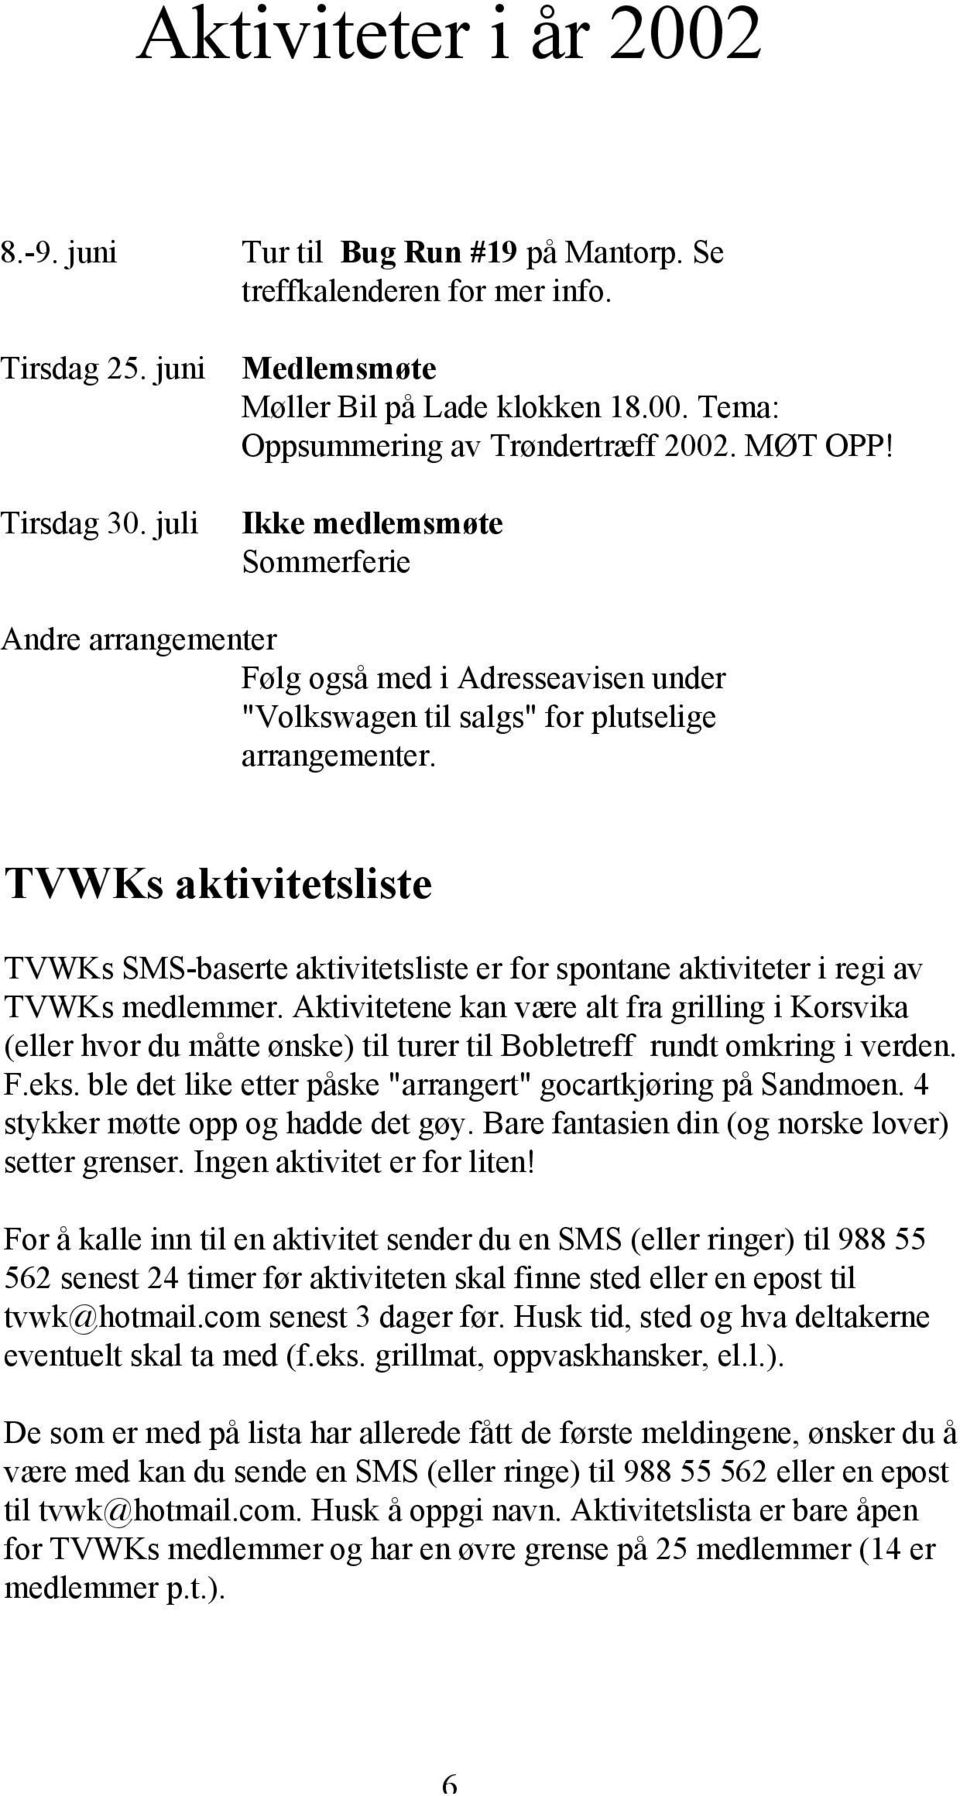 TVWKs aktivitetsliste TVWKs SMS-baserte aktivitetsliste er for spontane aktiviteter i regi av TVWKs medlemmer.